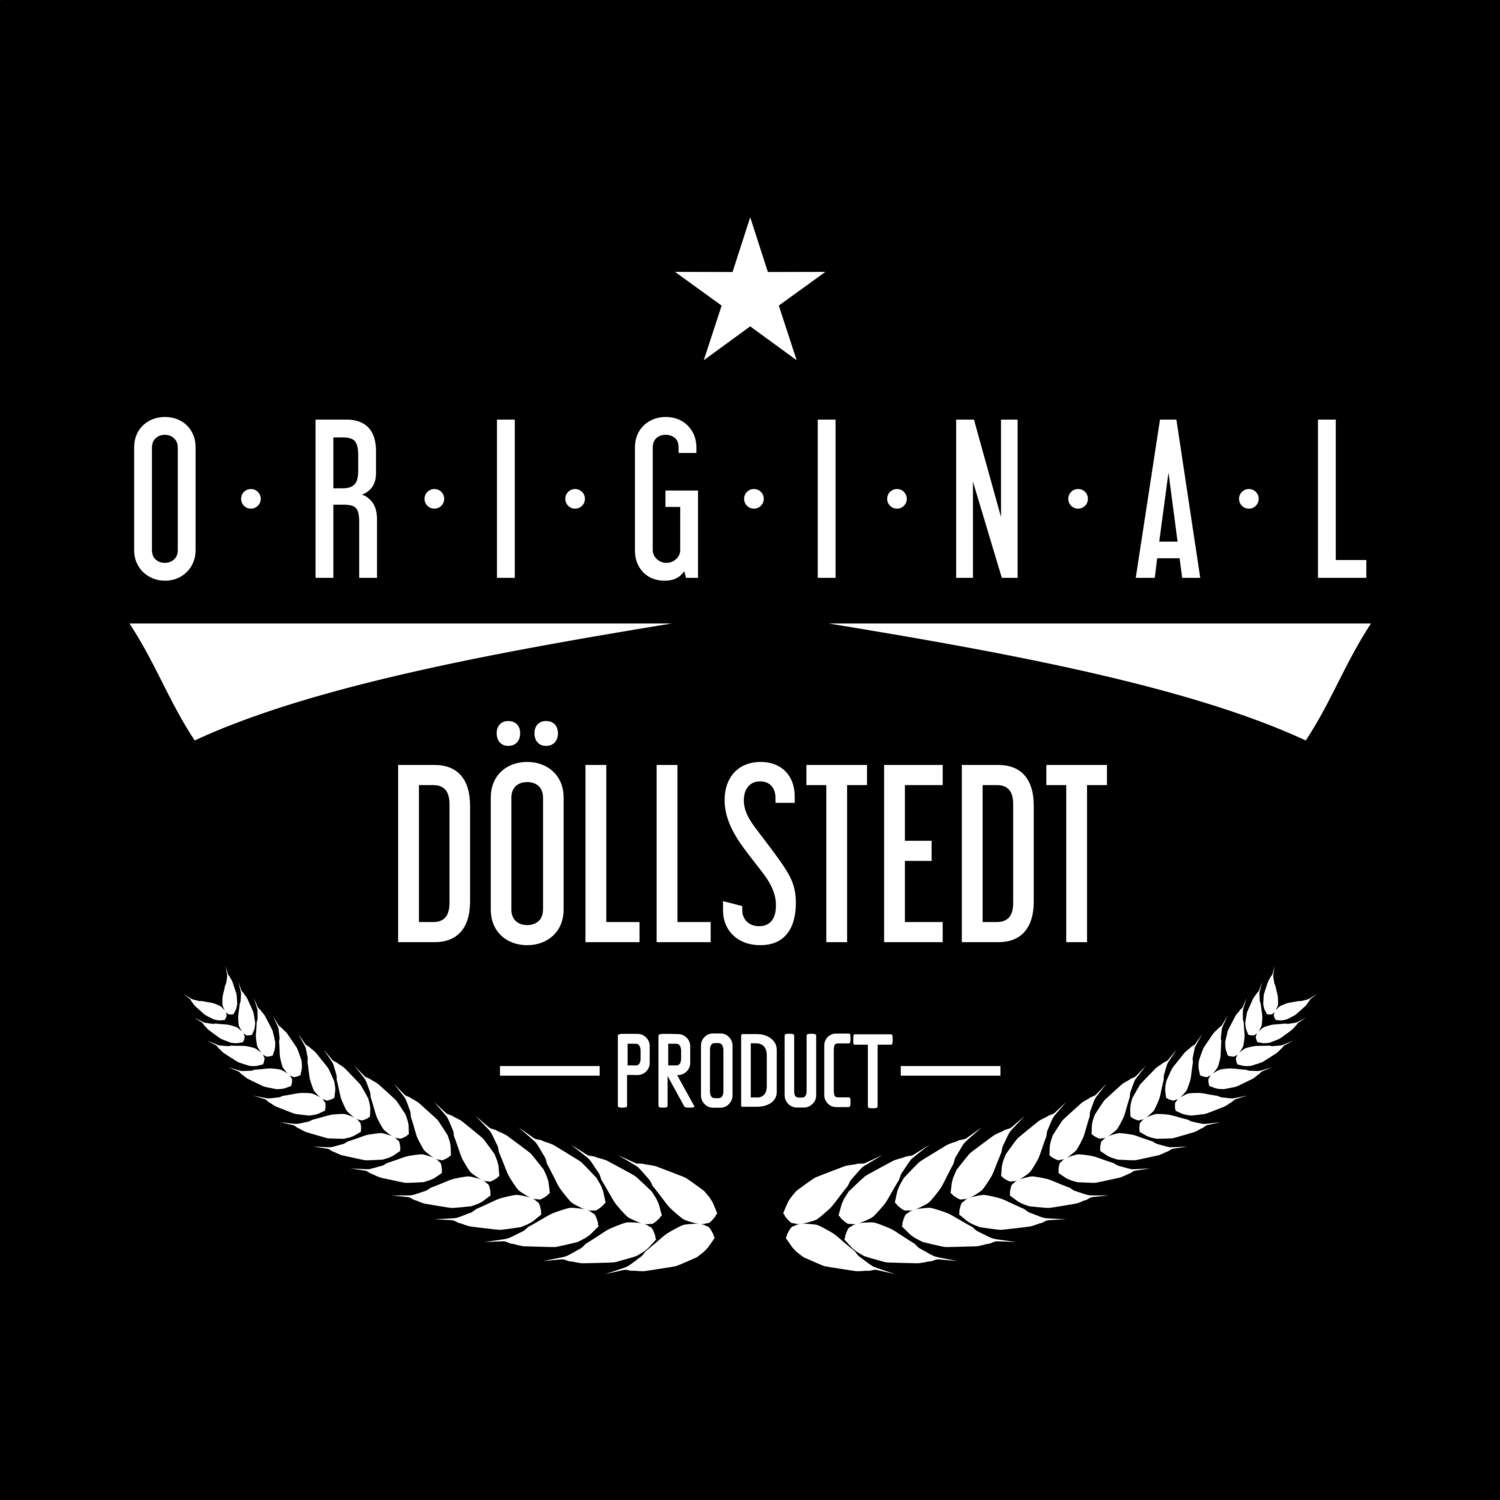 Döllstedt T-Shirt »Original Product«